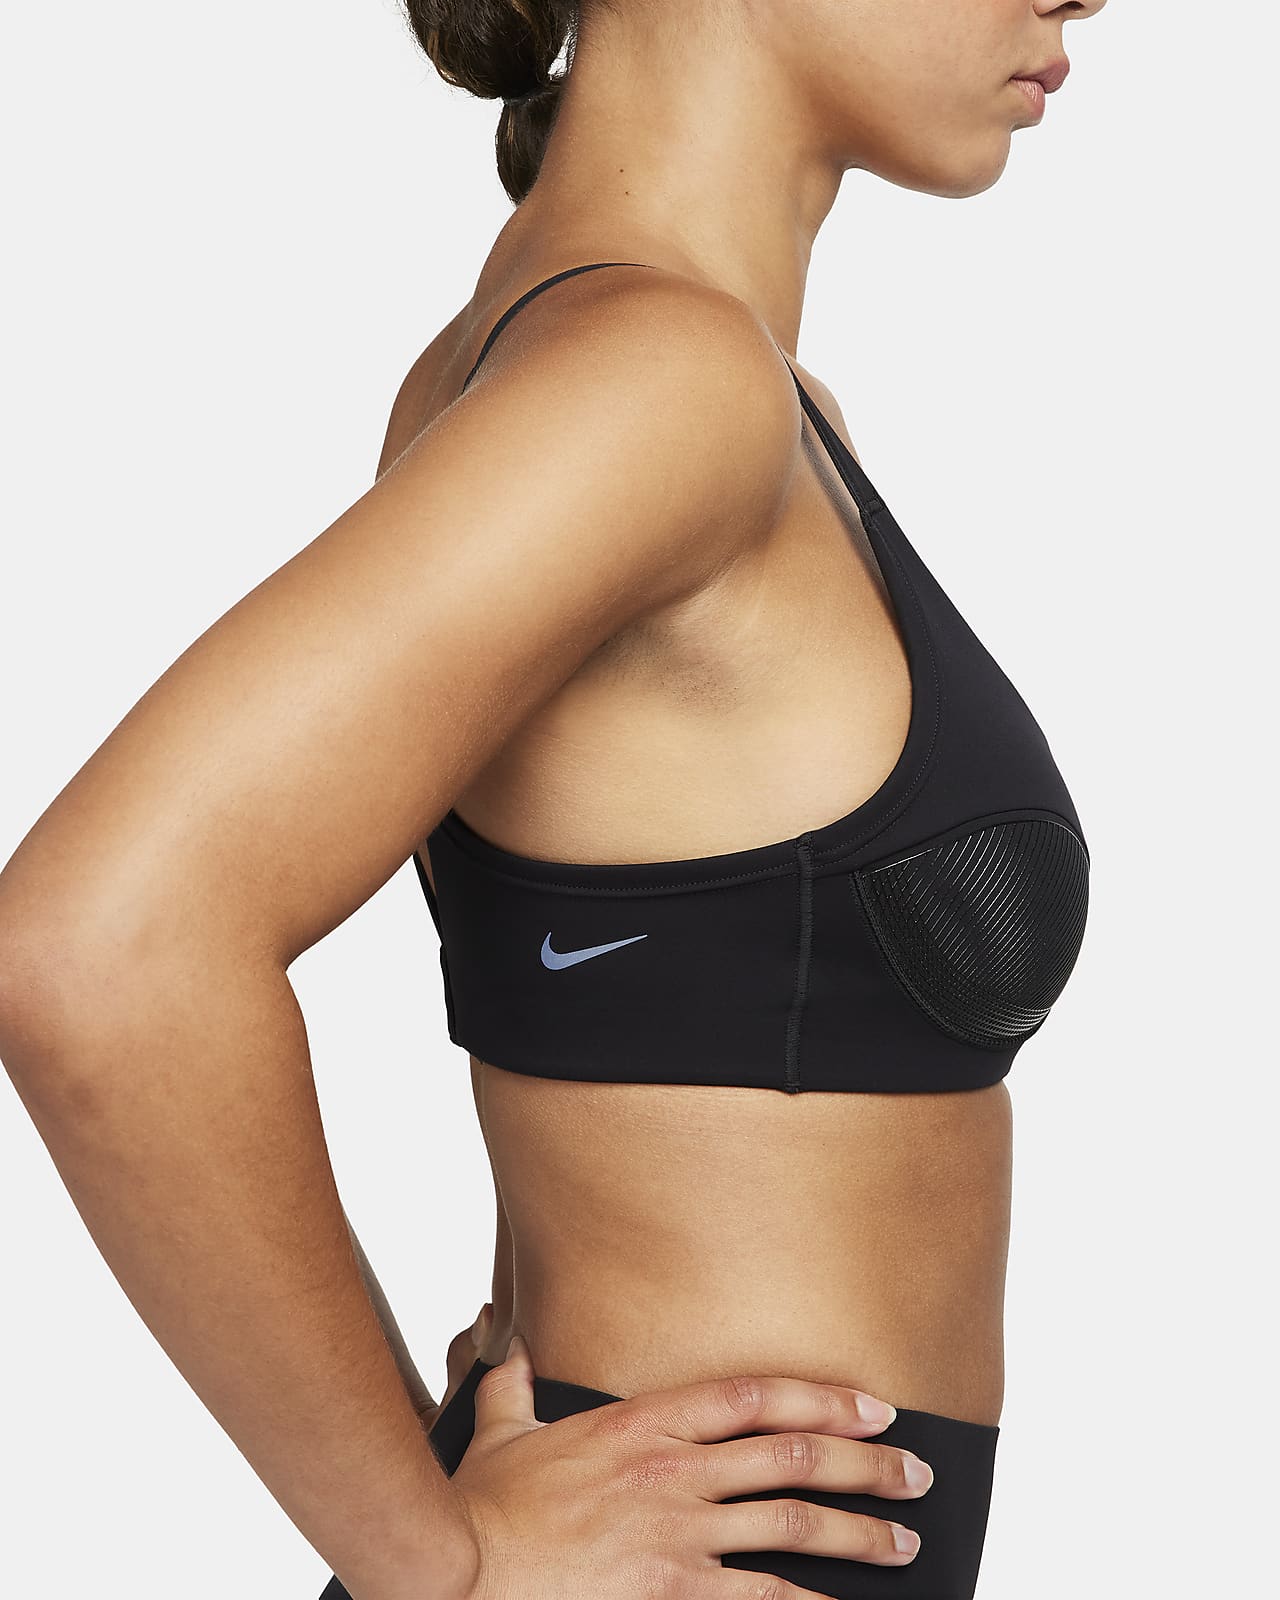 Nike Women's W Nk Indy Textured Shine Bra Sports Bra 